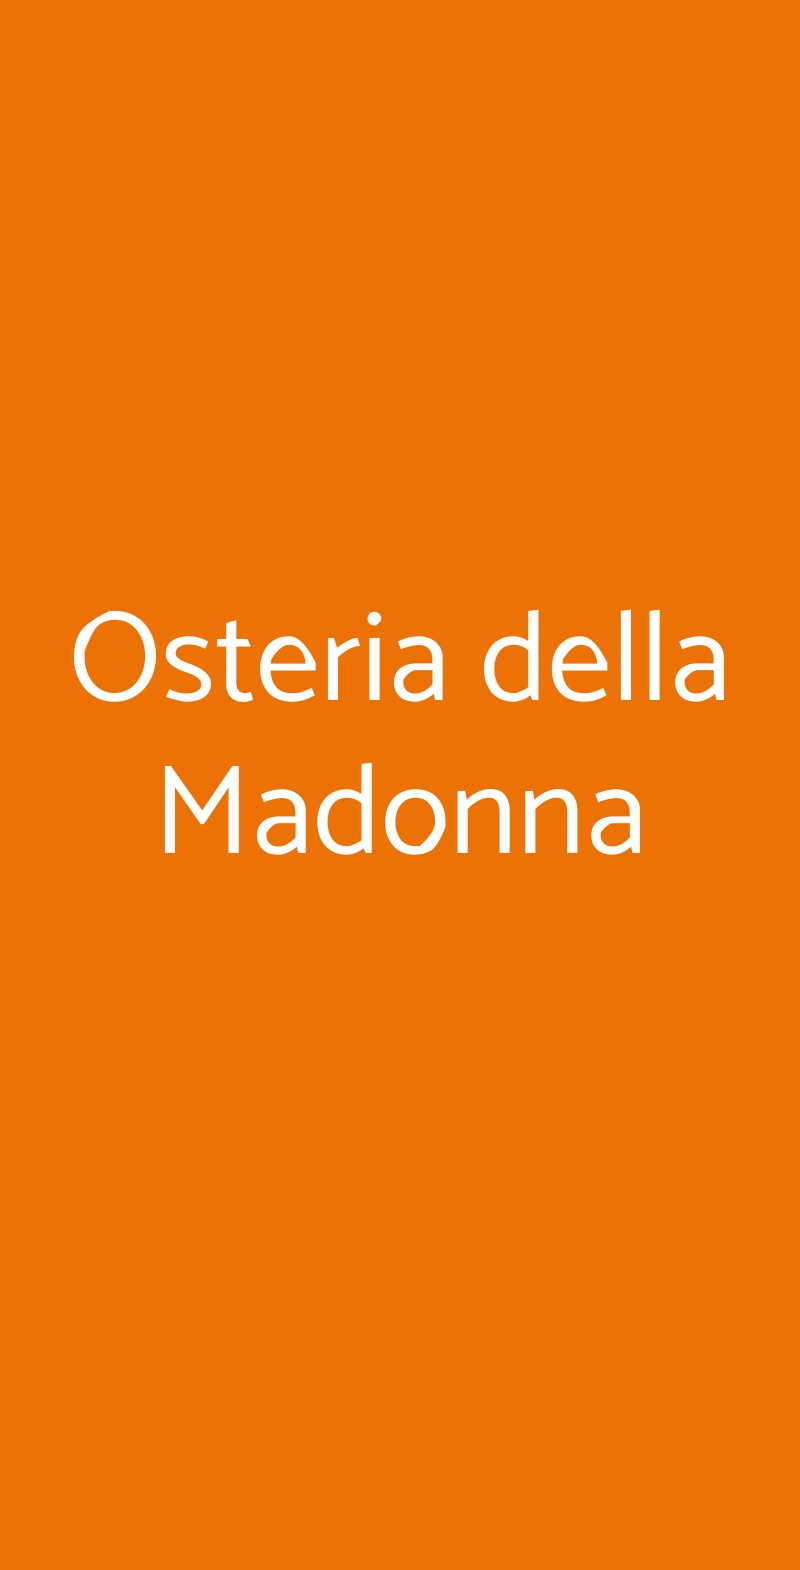 Osteria della Madonna Milano menù 1 pagina